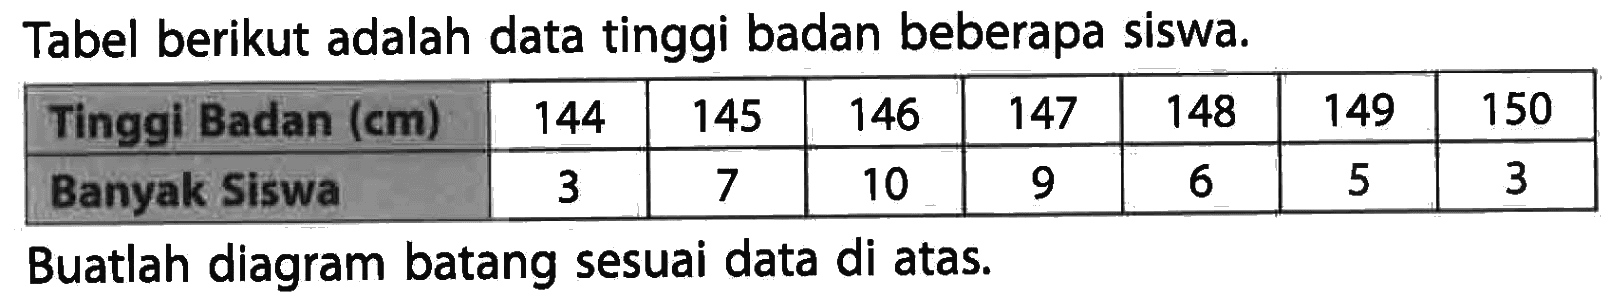 Tabel berikut adalah data tinggi badan beberapa siswa. Tinggi Badan (cm) 144 145 146 147 148 149 150 Banyak Siswa 3 7 10 9 6 5 3 Buatlah diagram batang sesuai data di atas